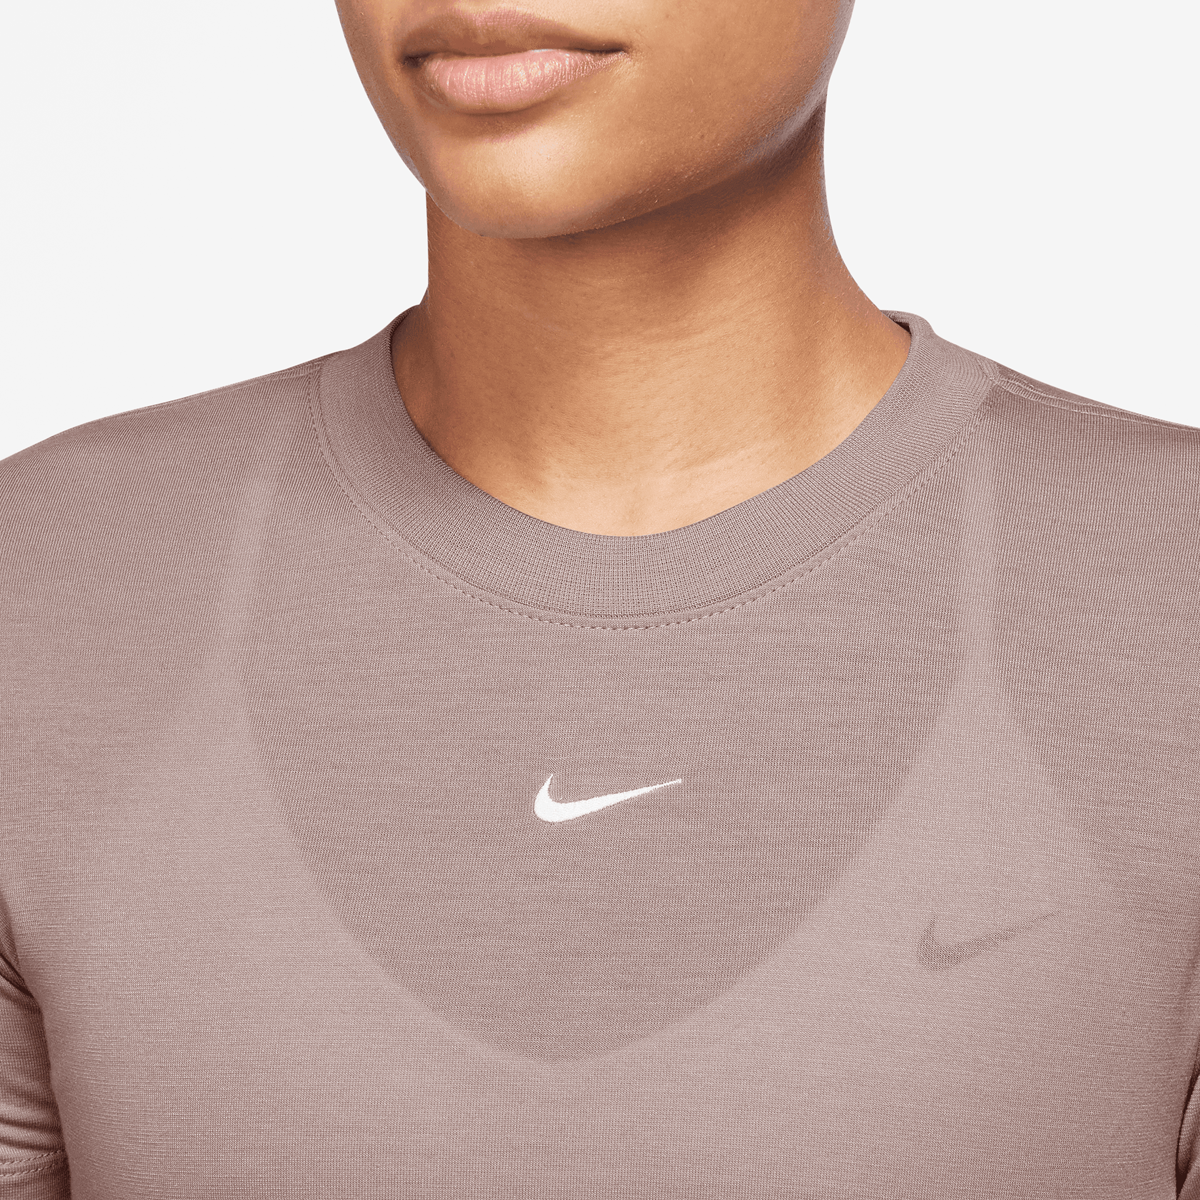 Nike Sportswear Essentials Slim Crop Top T-shirts Dames smokey mauve maat: S beschikbare maaten:XS S M L XL